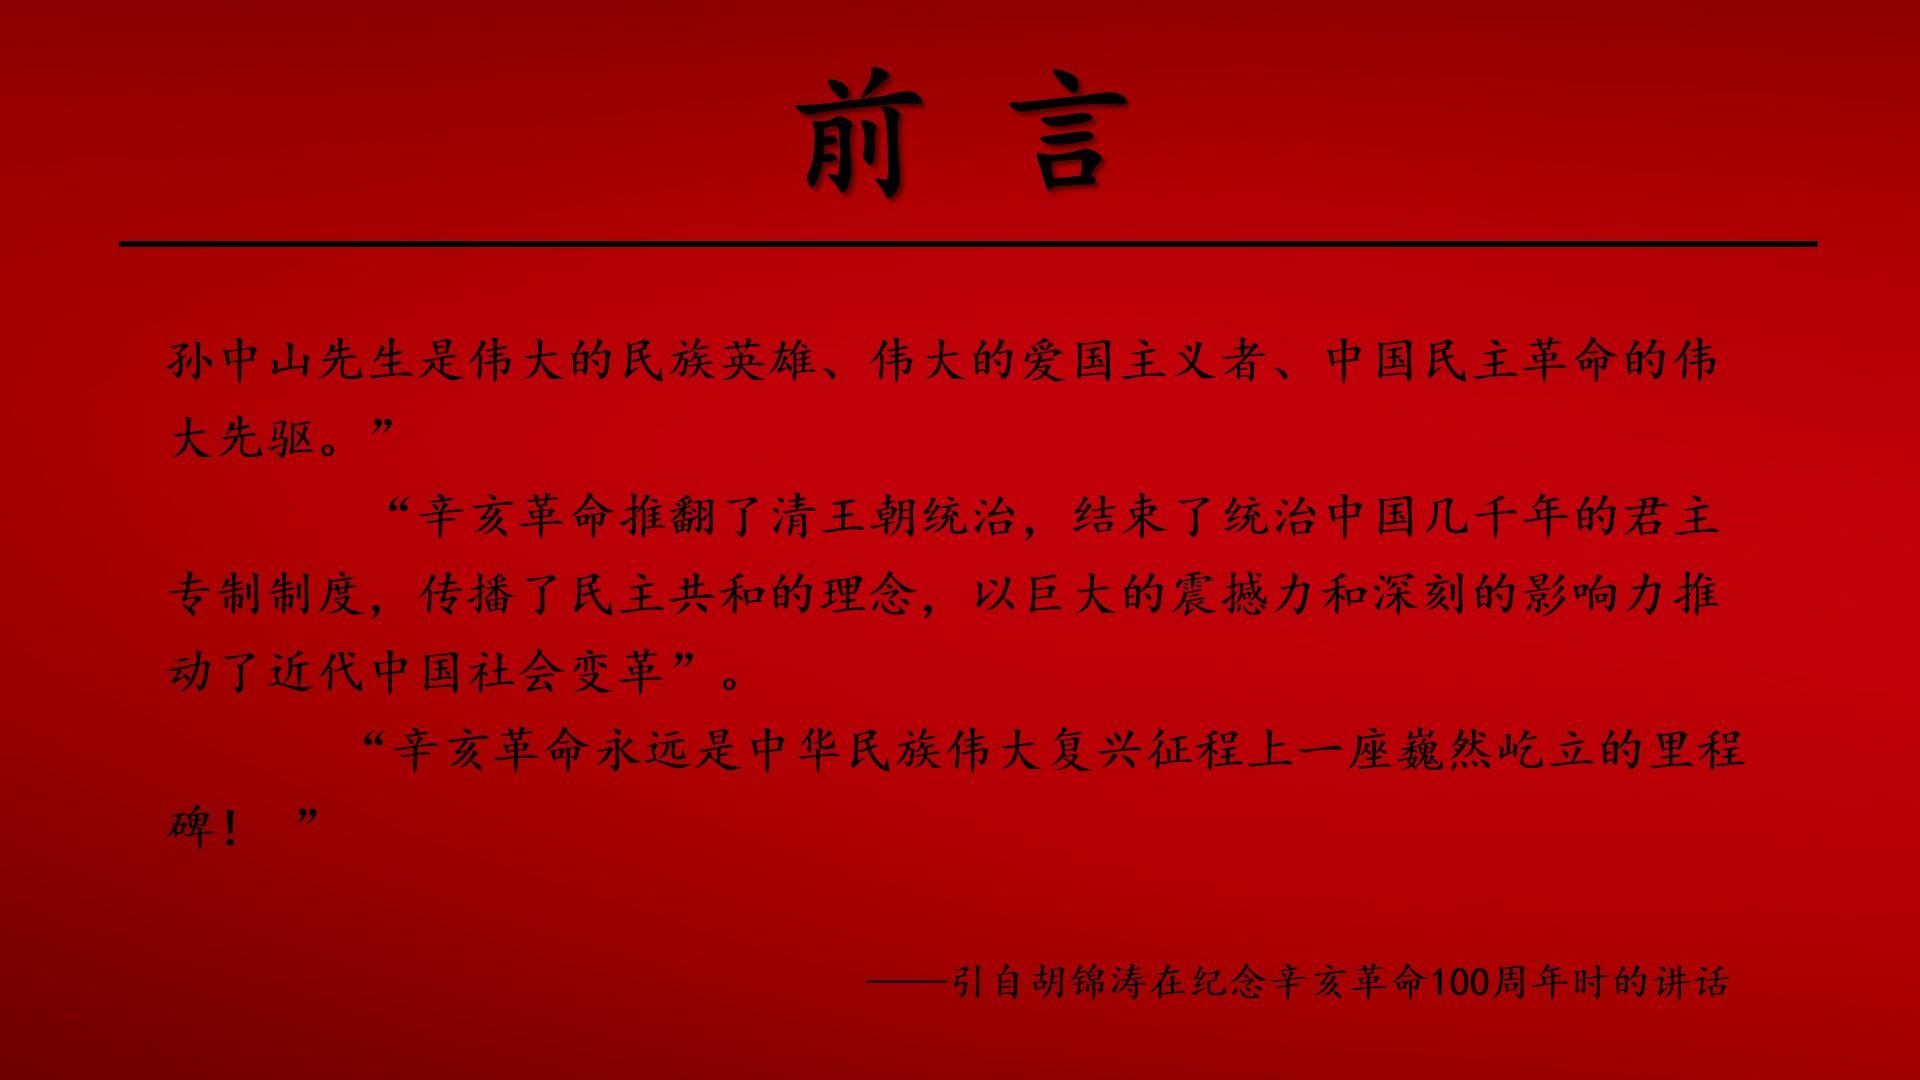 教育教学红色橙色简洁辛亥革命中国纪念民主革命共和云素材PPT模板1672601440525